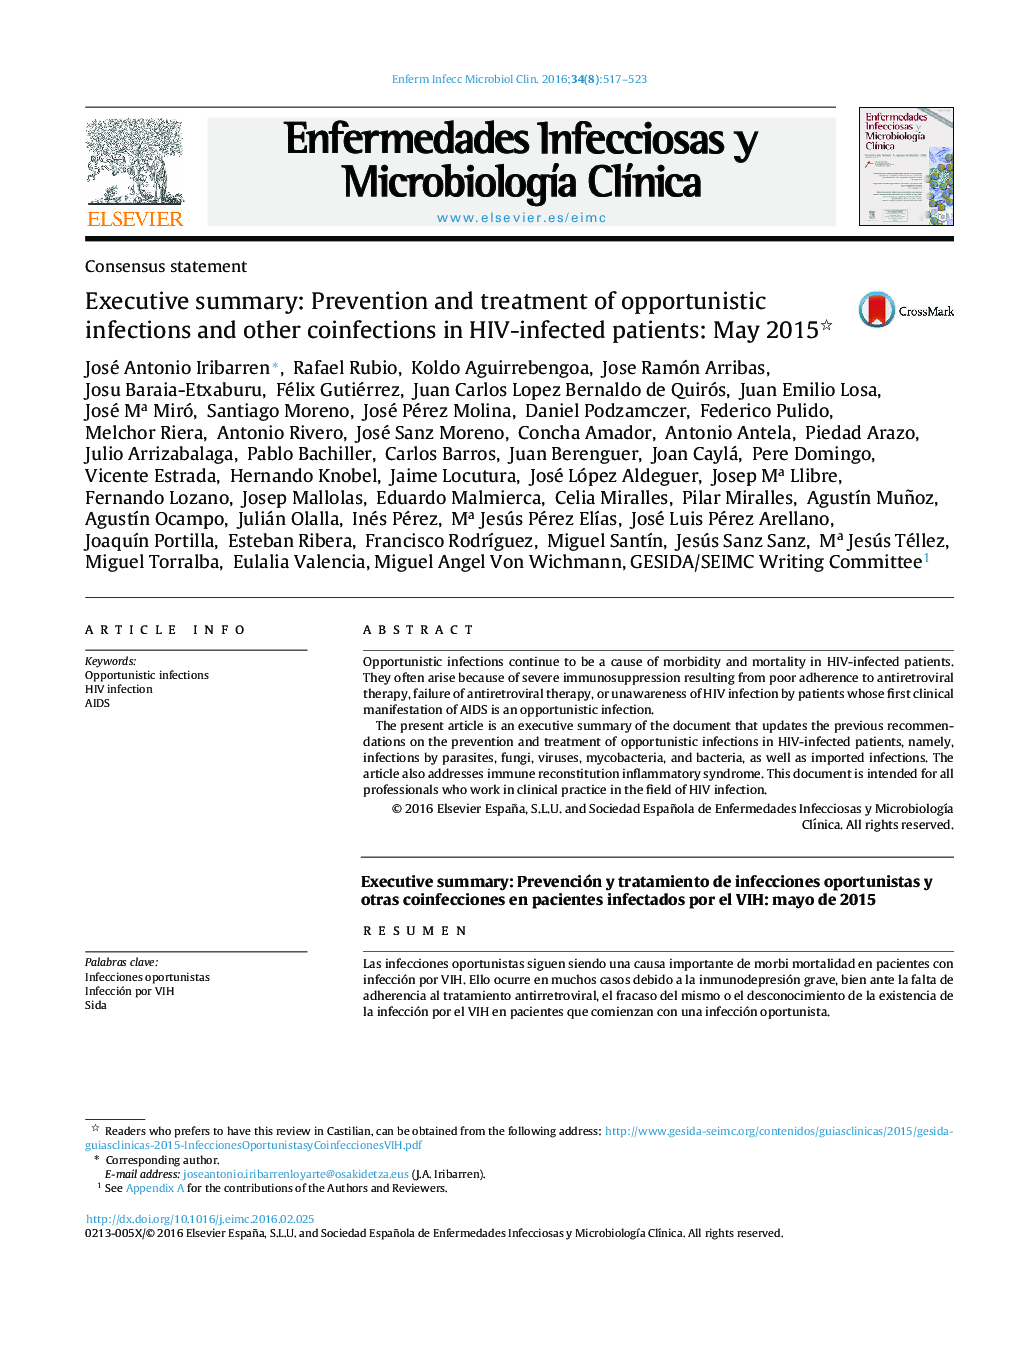 خلاصه اجرایی: پیشگیری و درمان عفونت های فرصت طلب و سایر عفونت های همراه در بیماران آلوده به ویروس: مه 2015 